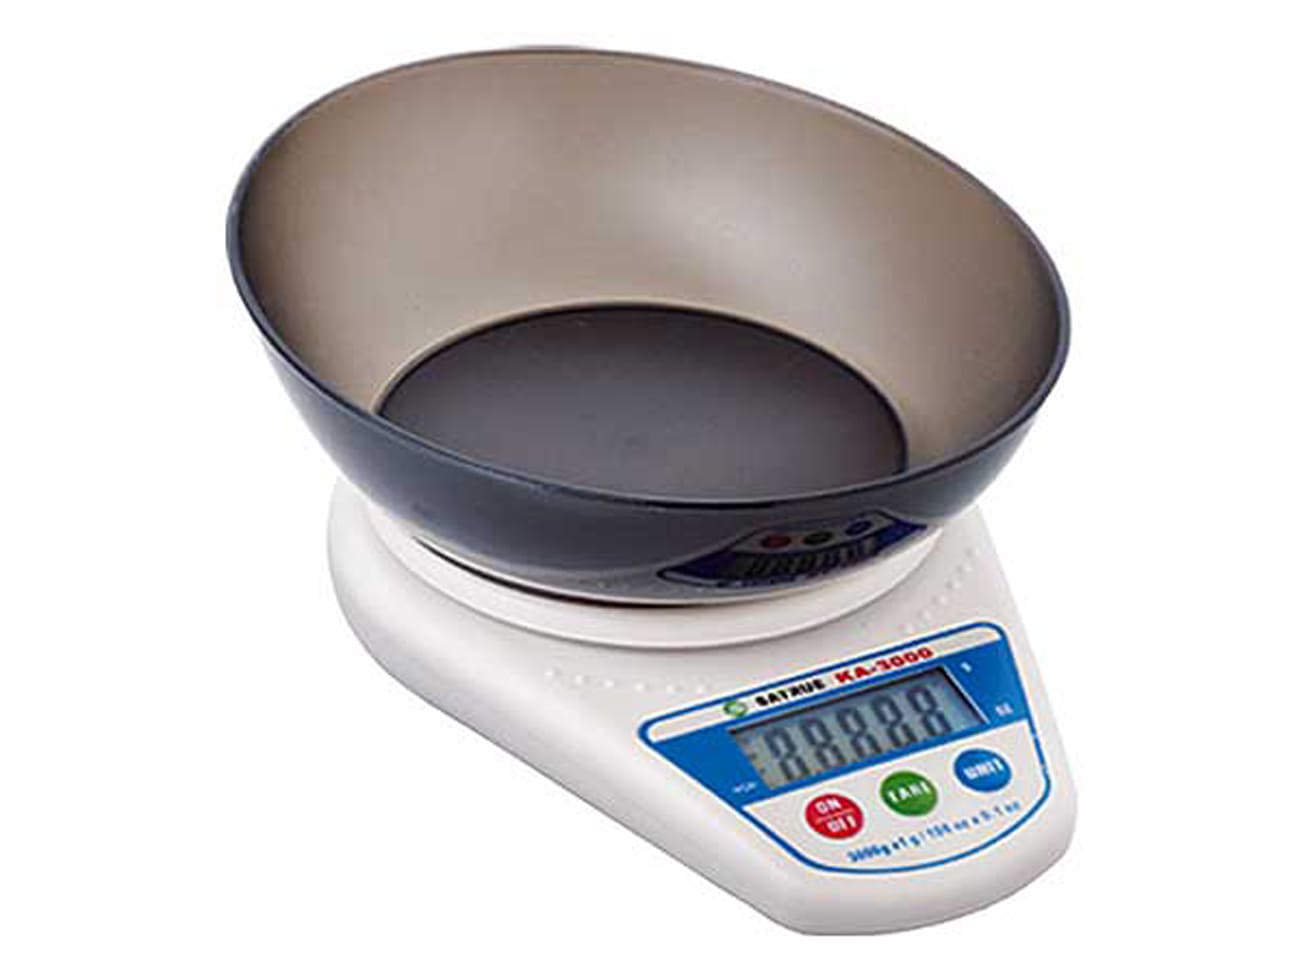 Balance de cuisine numérique professionnelle 3 kg